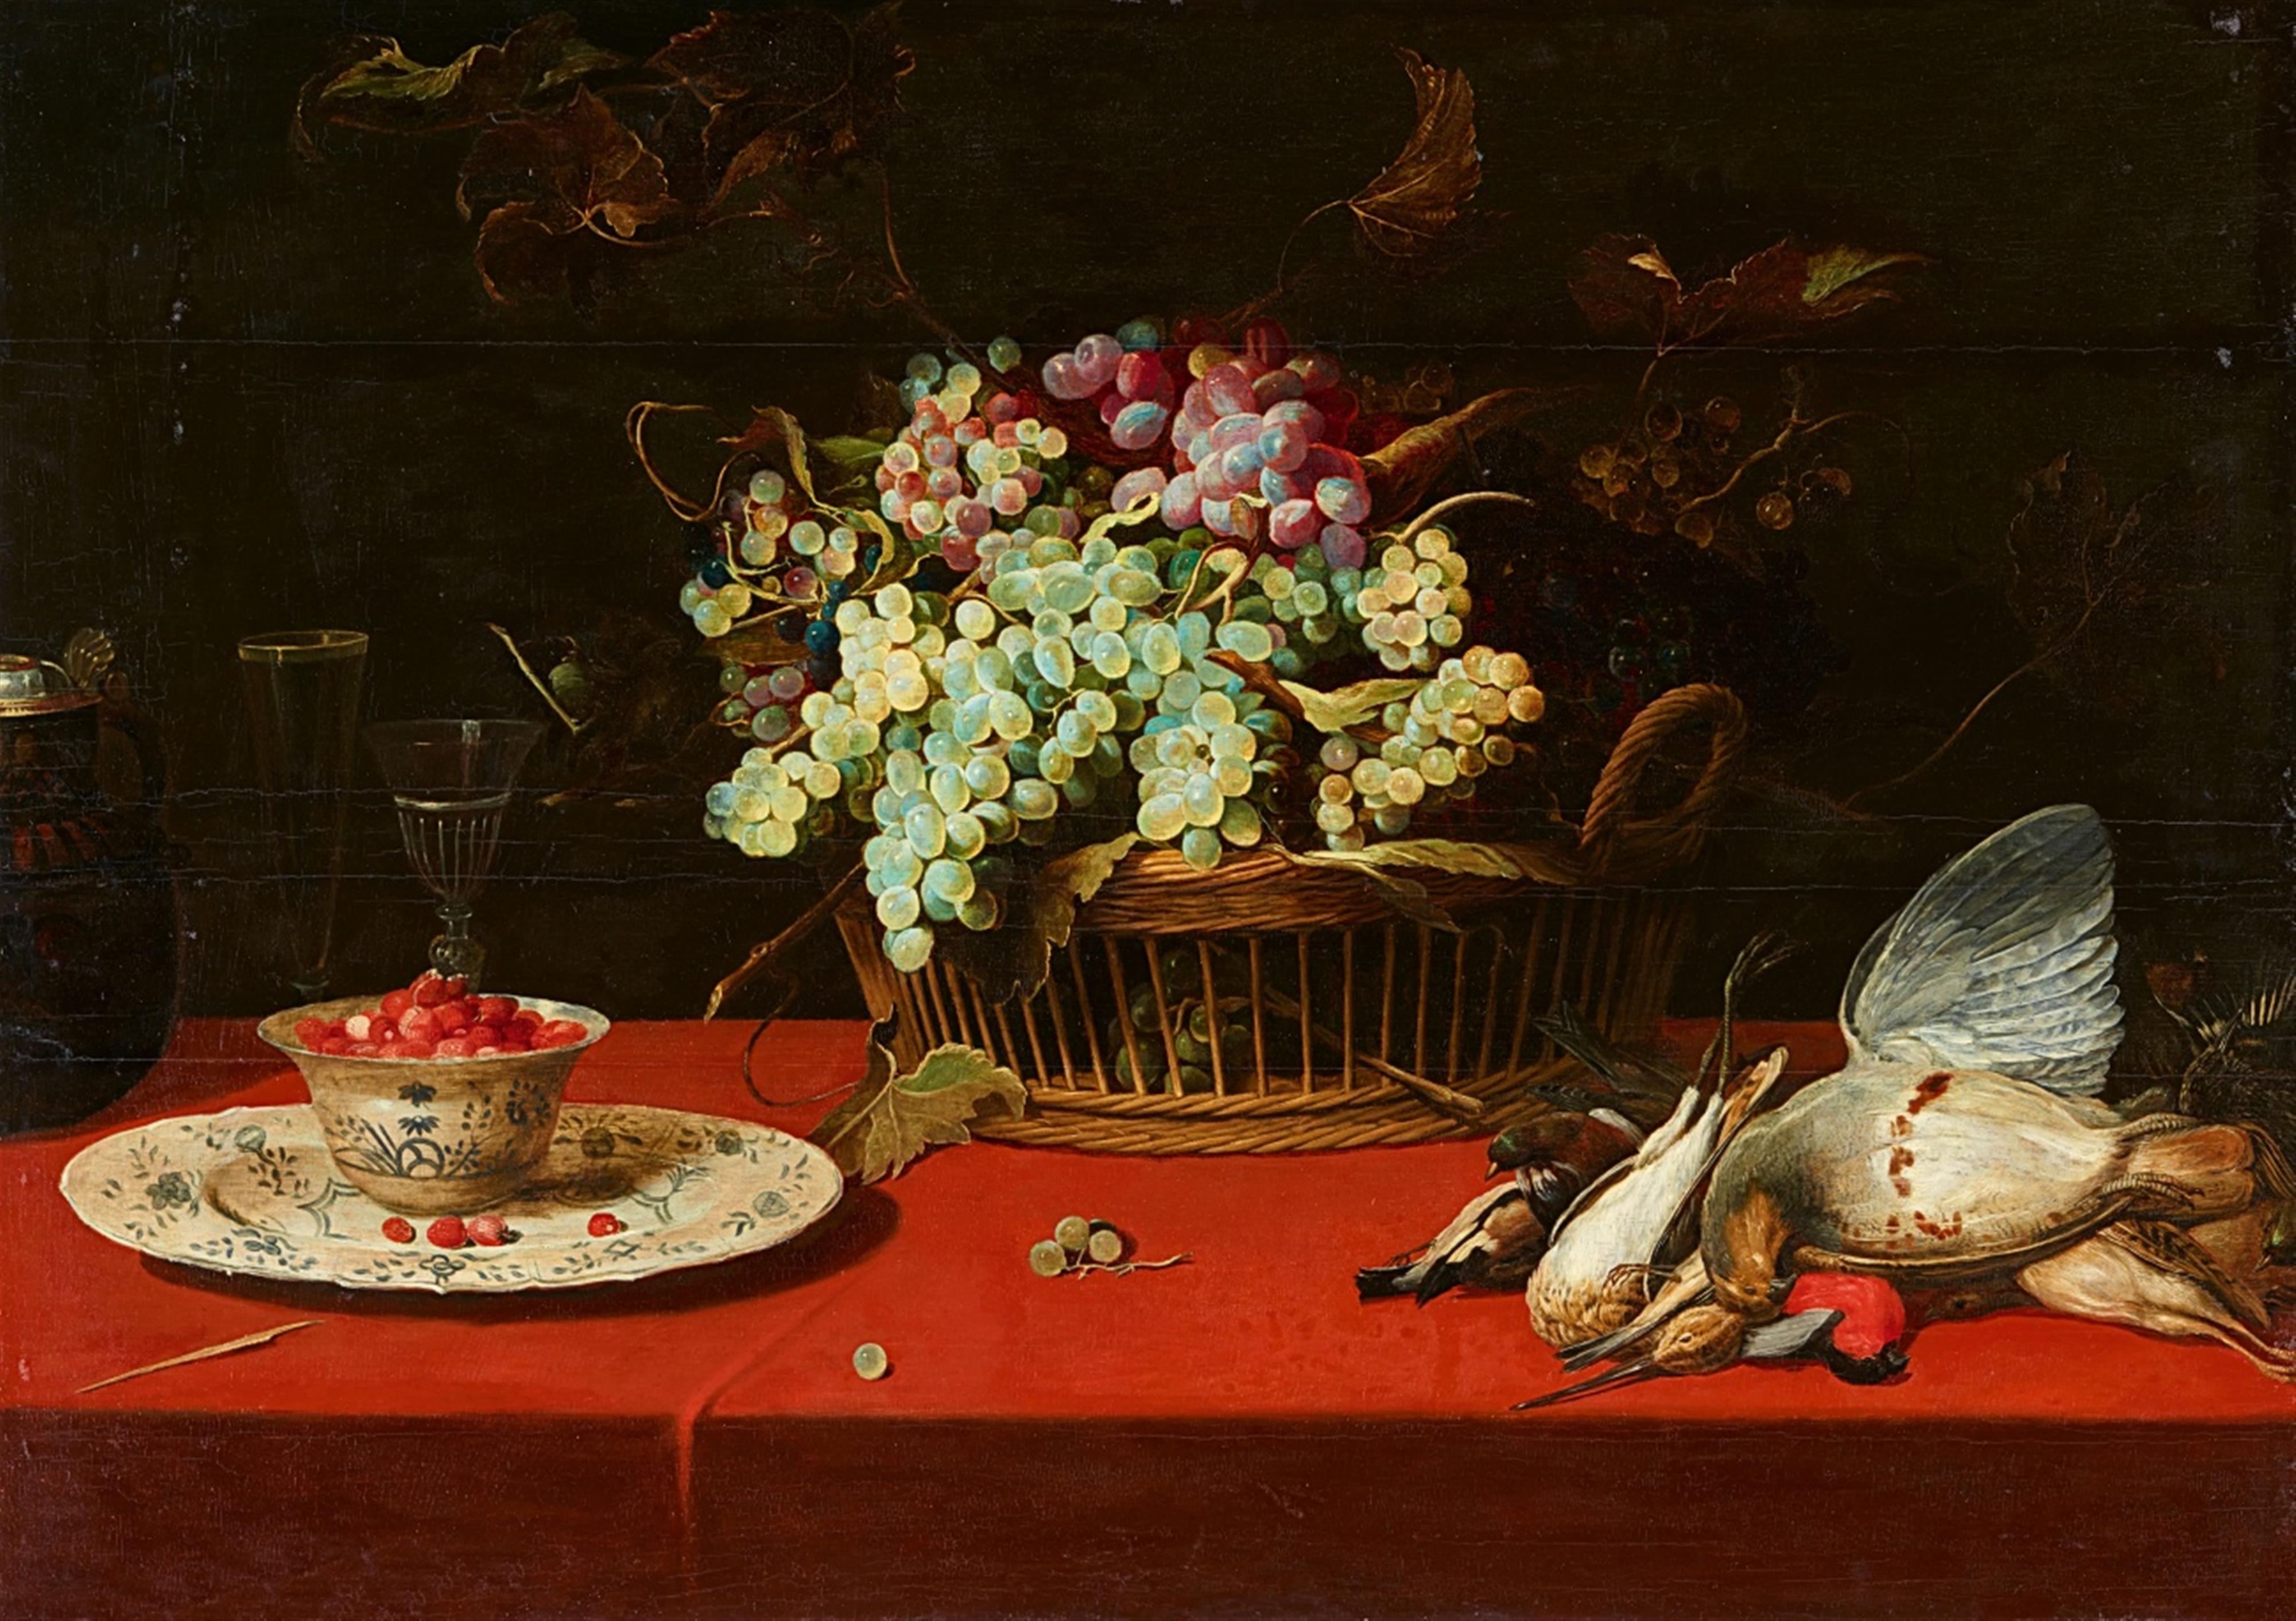 Frans Snyders - Stillleben mit Trauben in einem Korb, einer Erdbeerschüssel und erlegten Vögeln - image-1